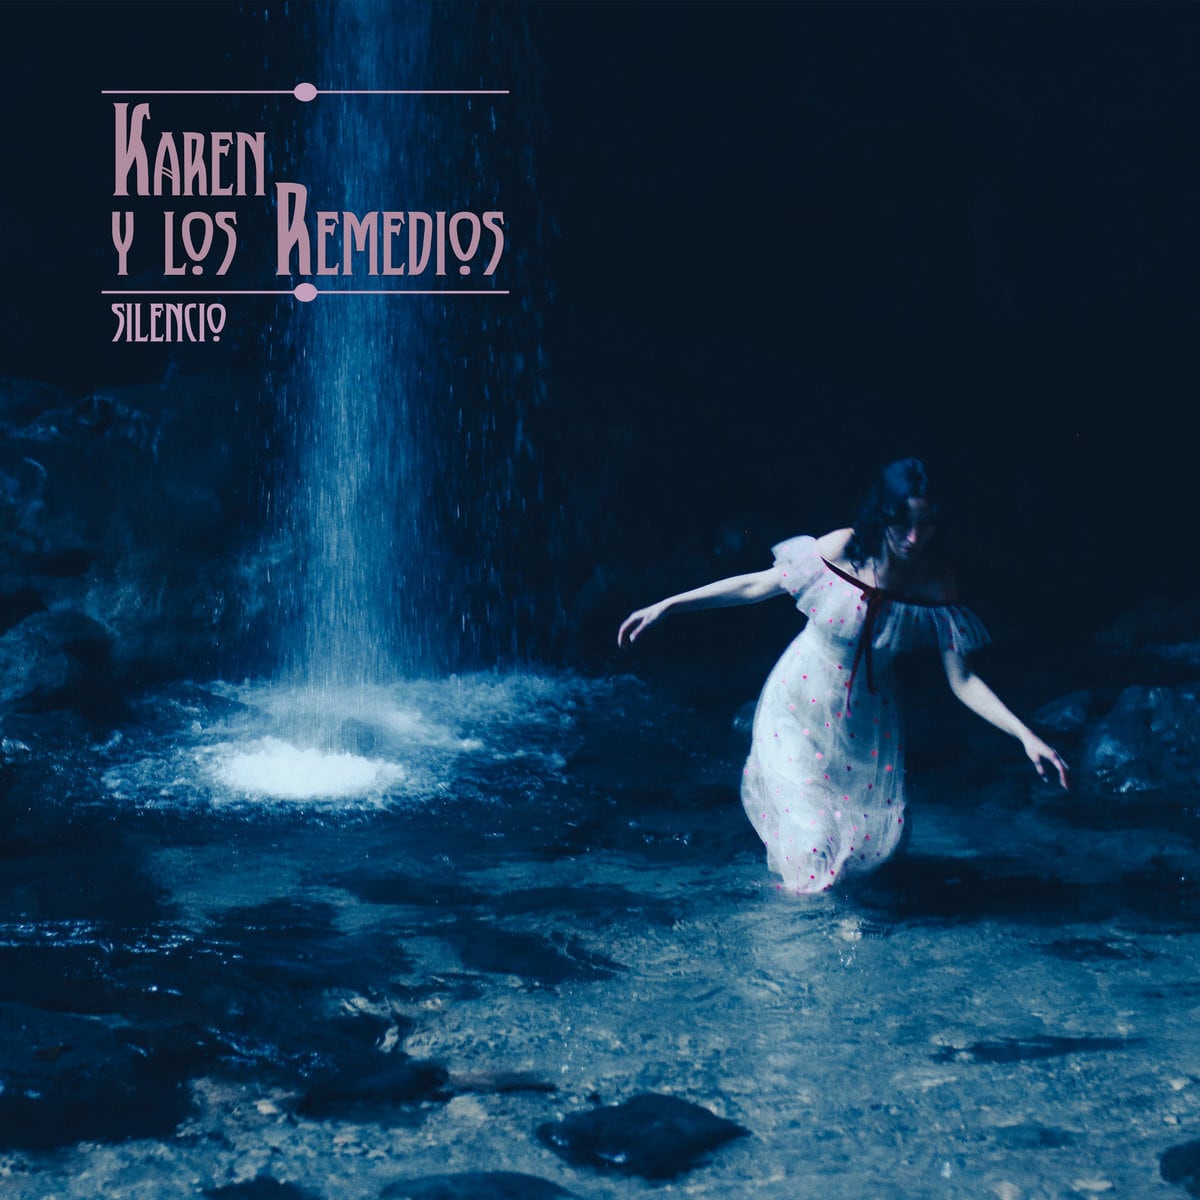 Karen y los Remedios -  Silencio (Black & Blue Galaxy Effect LP)